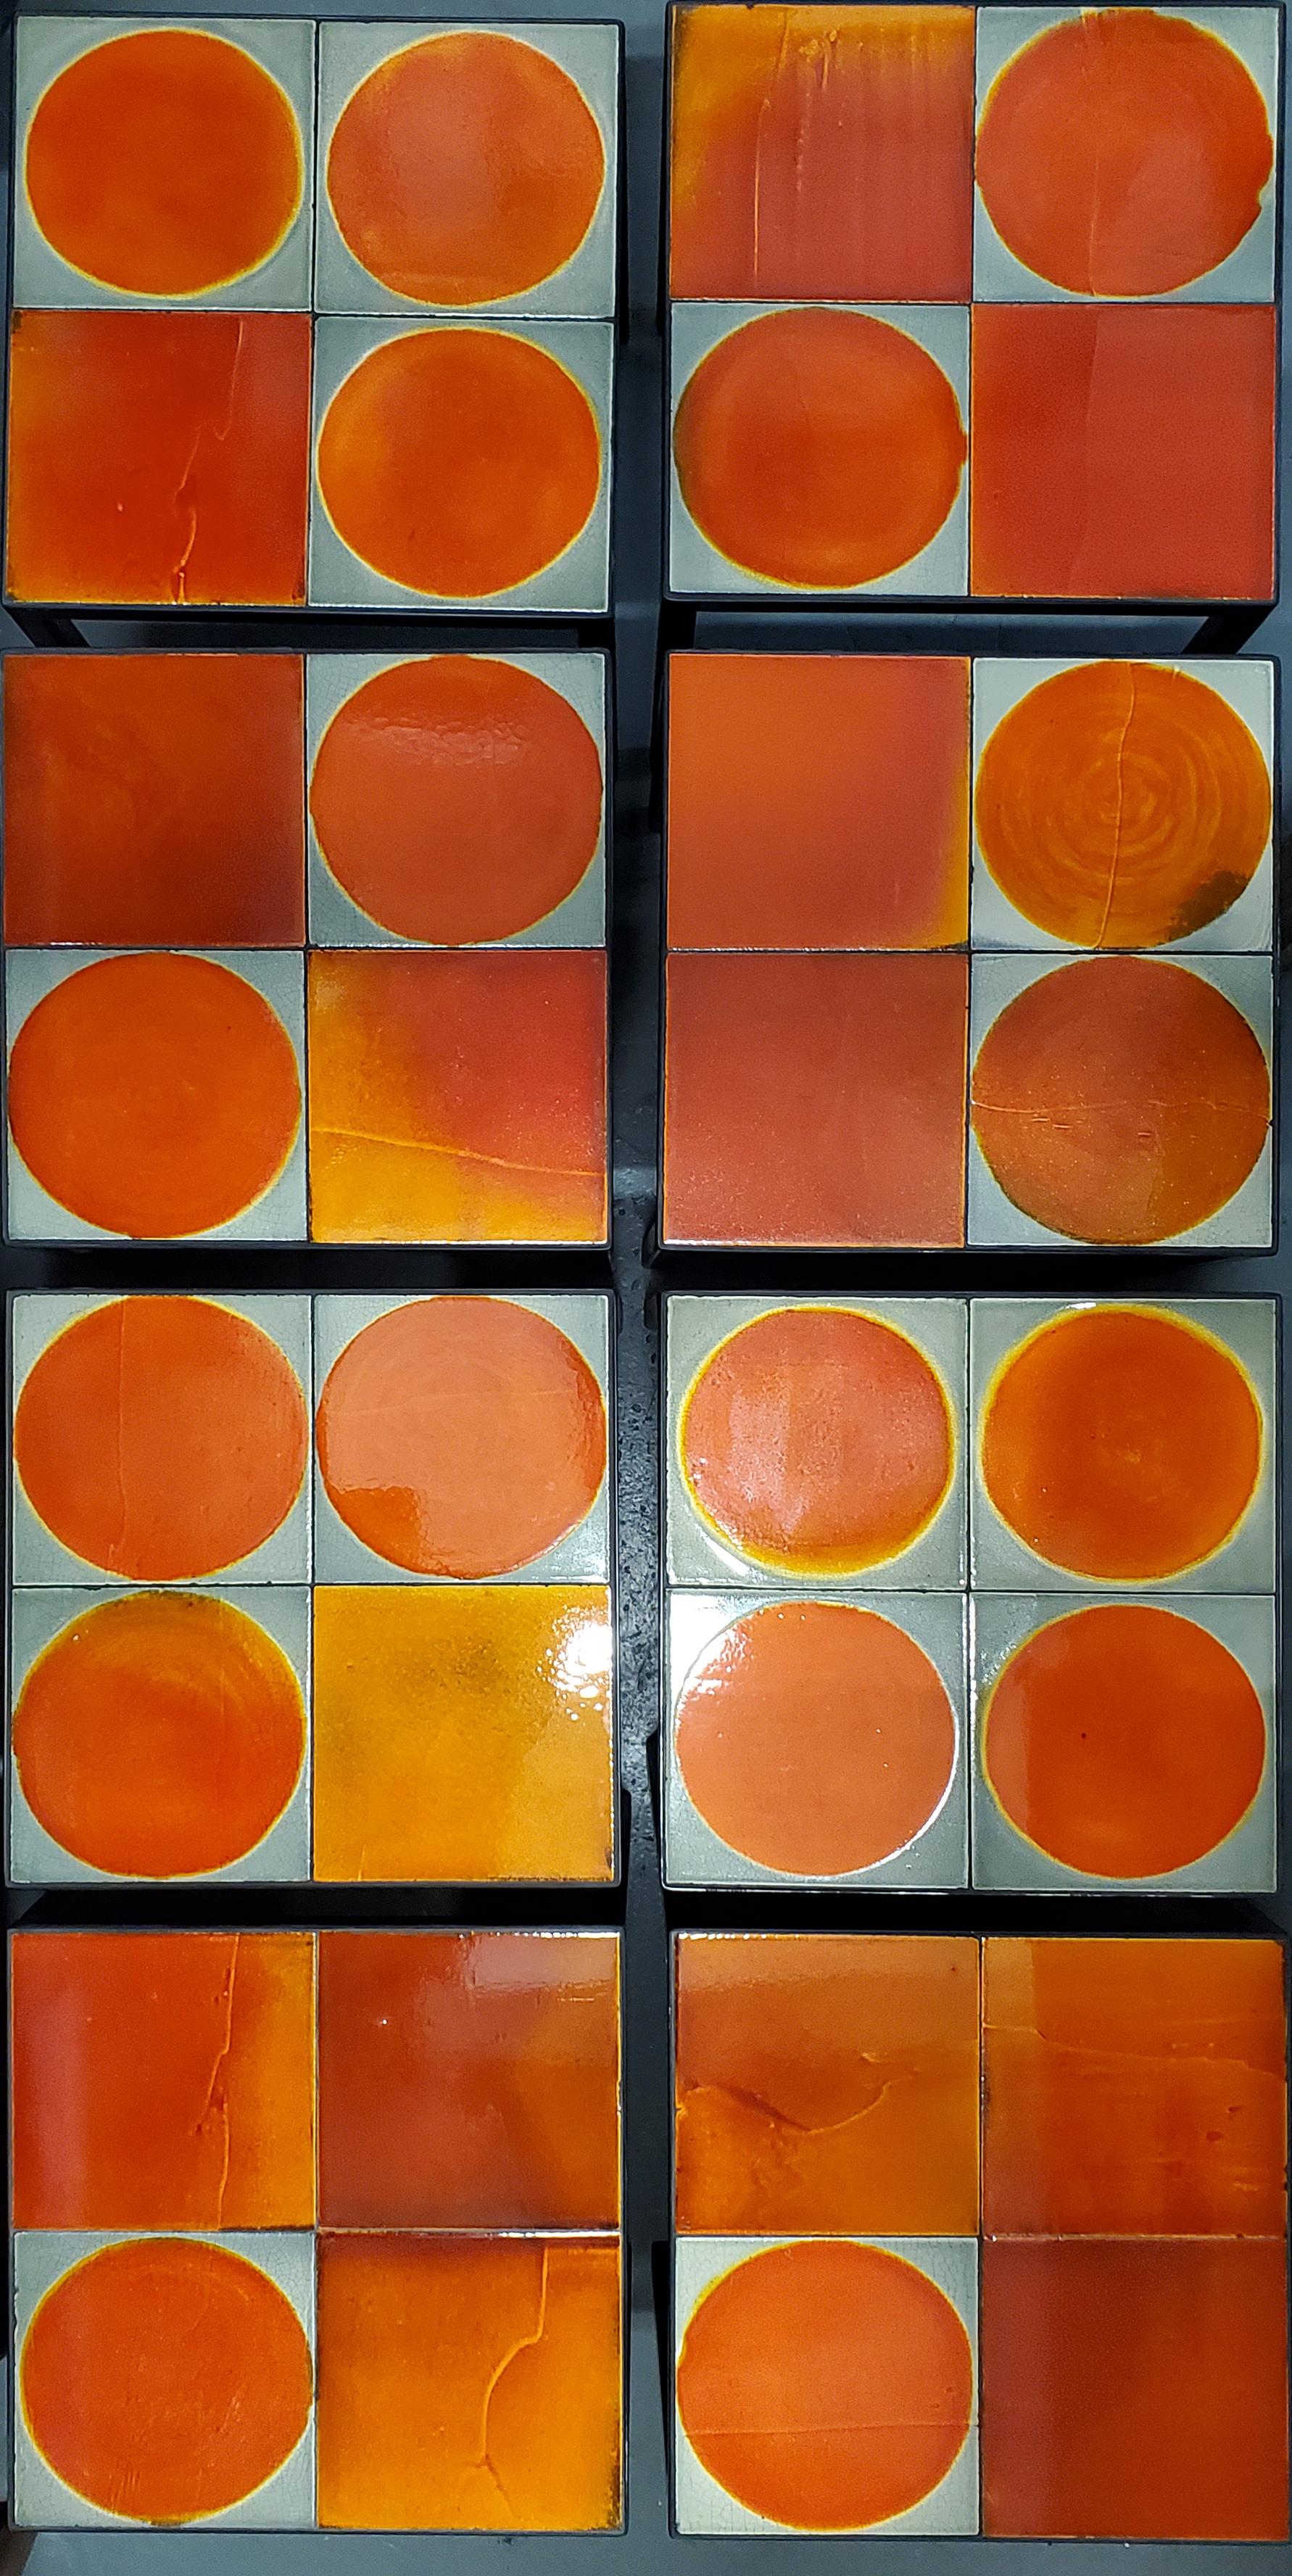 Cette table basse est composée de 4 carreaux de céramique fabriqués dans les années 1970 par Roger Capron, l'un des céramistes les plus connus de l'ère moderne.  Chaque carreau est unique, émaillé à la main et varié en couleur et en texture. Nous